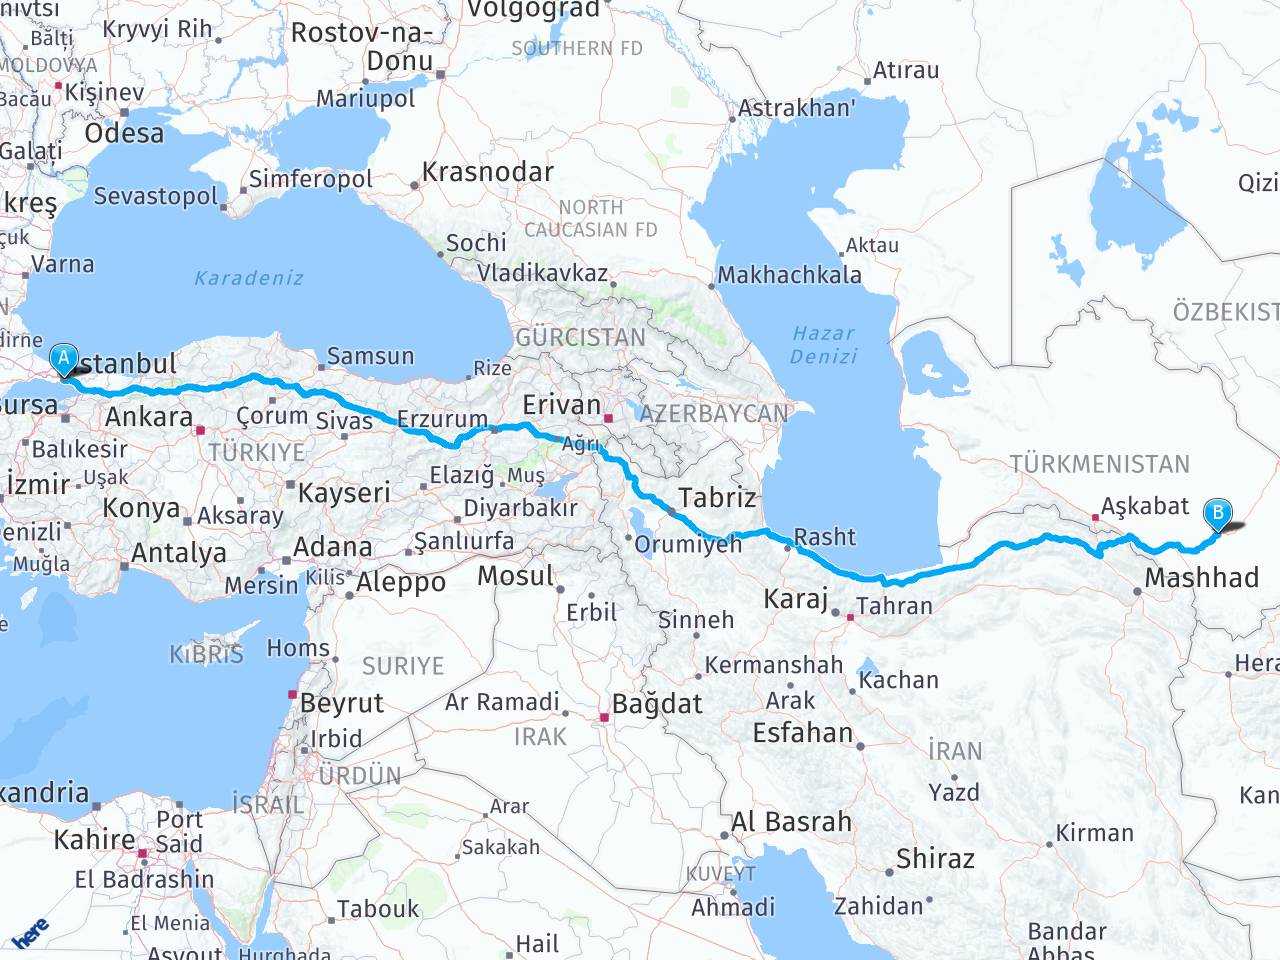 turkiye istanbul turkmenistan dasoguz arasi mesafe turkiye istanbul turkmenistan dasoguz yol haritasi turkiye istanbul turkmenistan dasoguz kac saat kac km